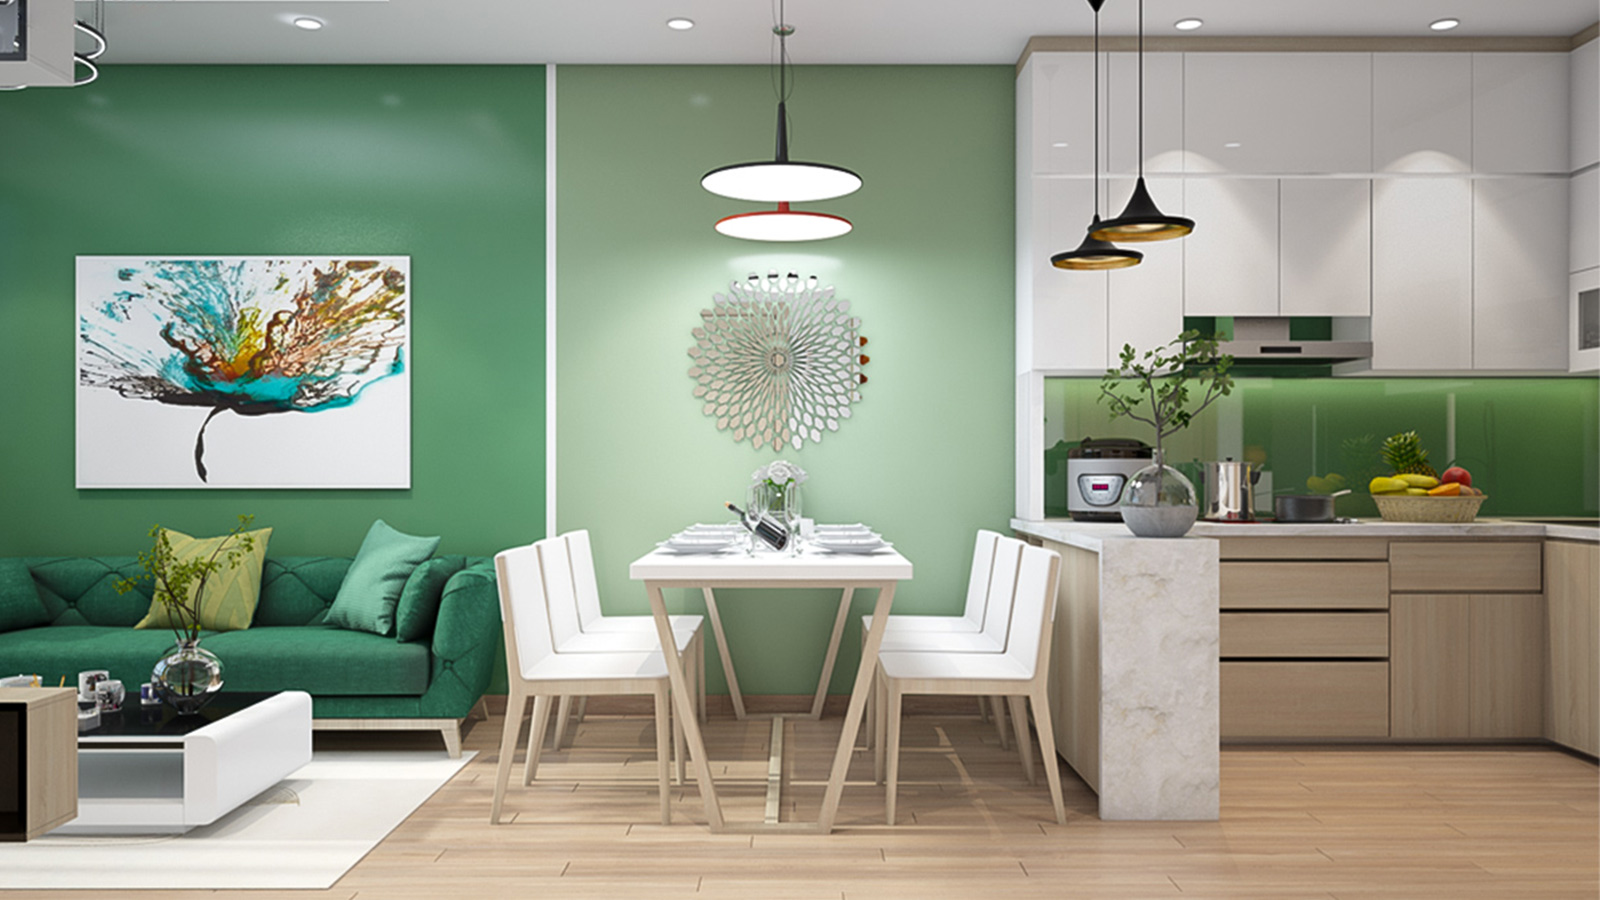 Thiết kế nội thất xanh - Xu hướng ngày càng phổ biến